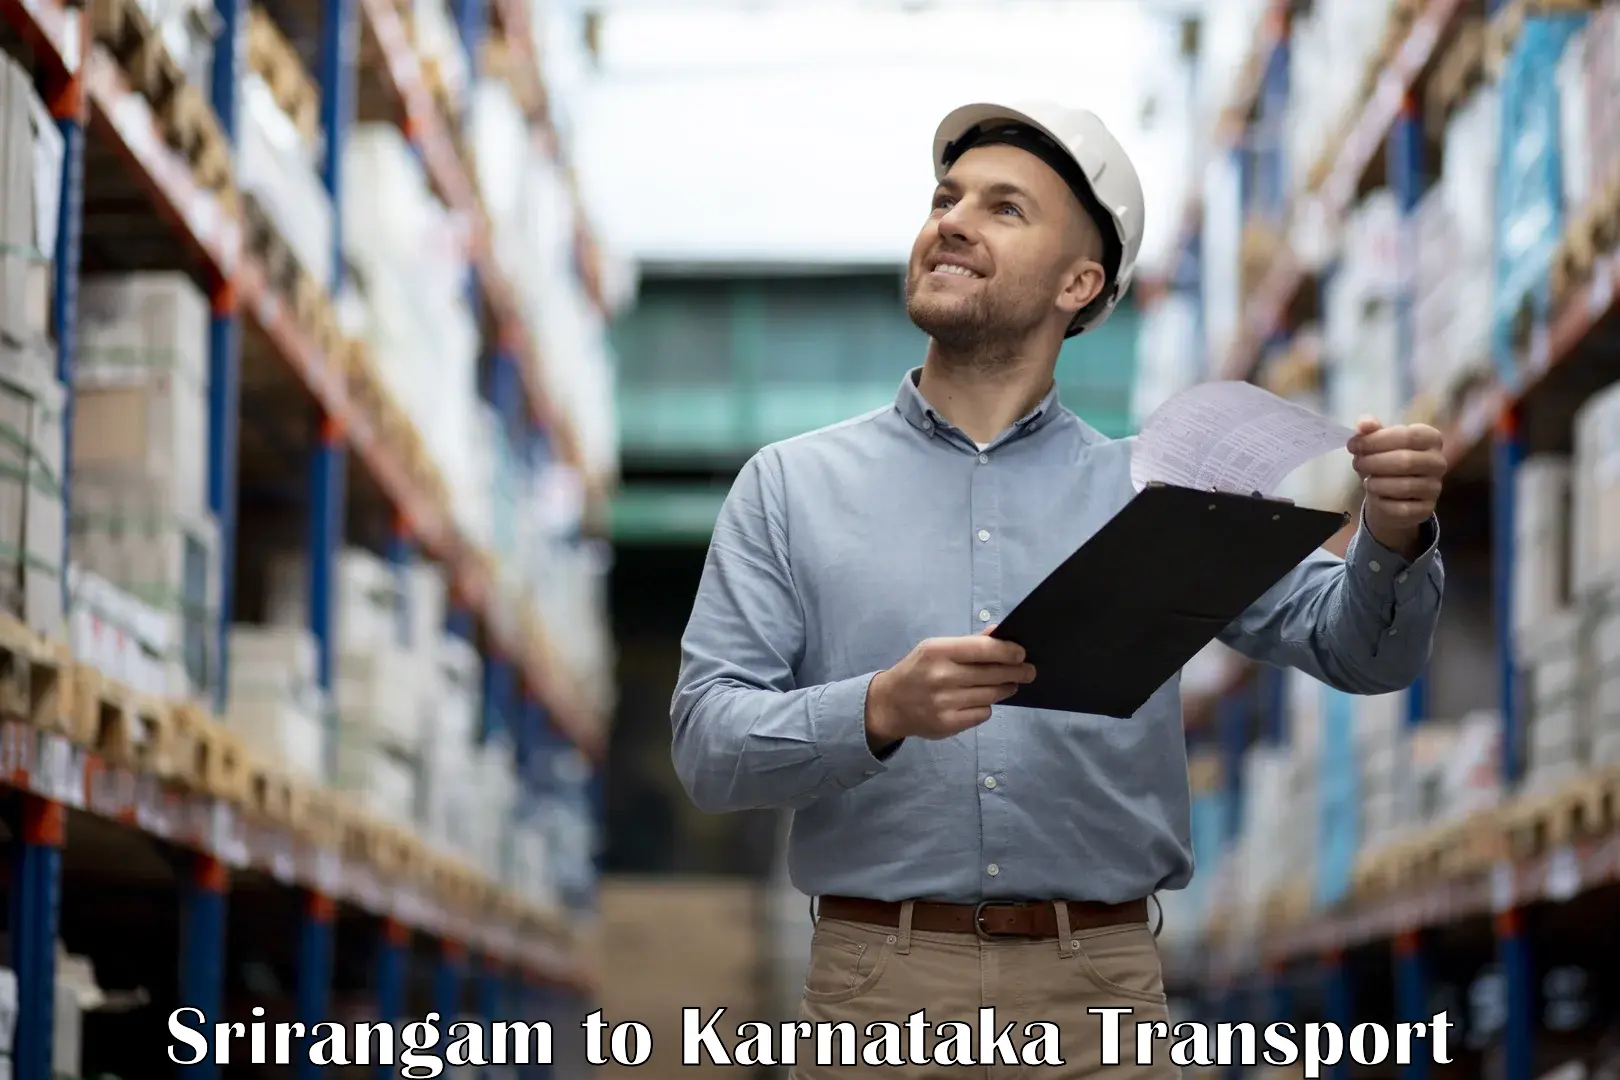 Furniture transport service Srirangam to Karnataka